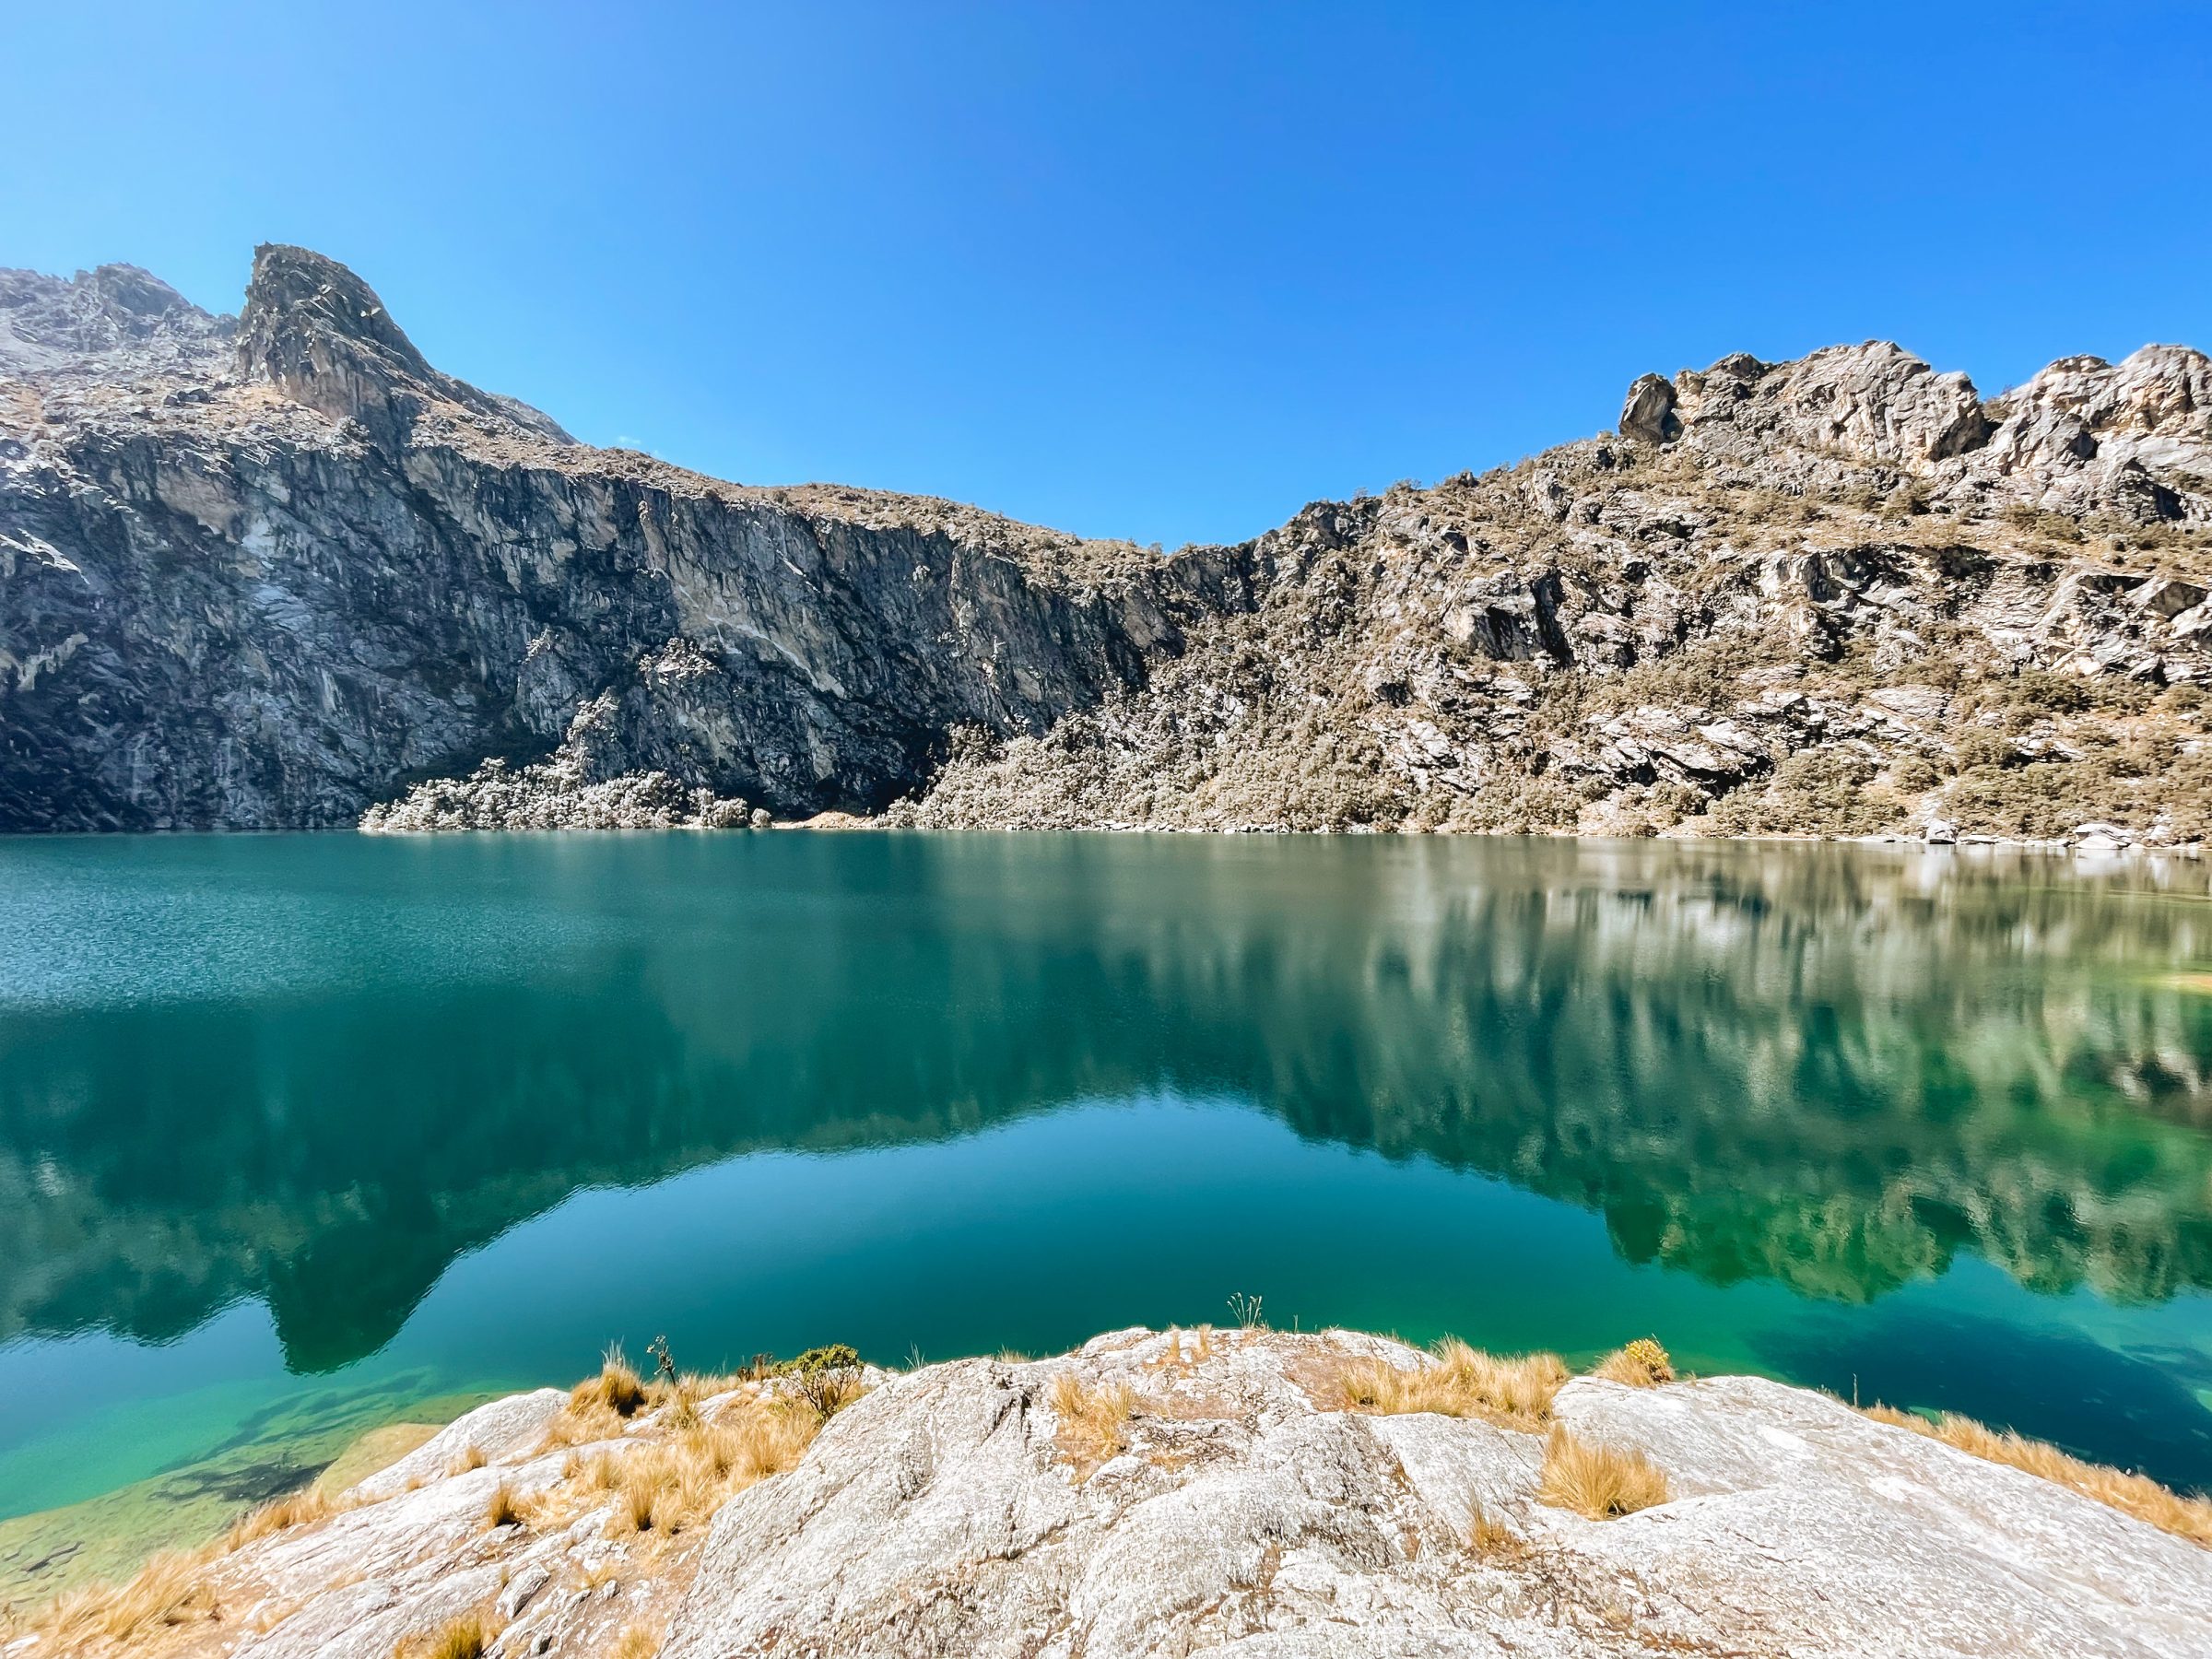 La belle réflexion à Laguna Churup à travers l'eau calme | Randonnée à Huaraz